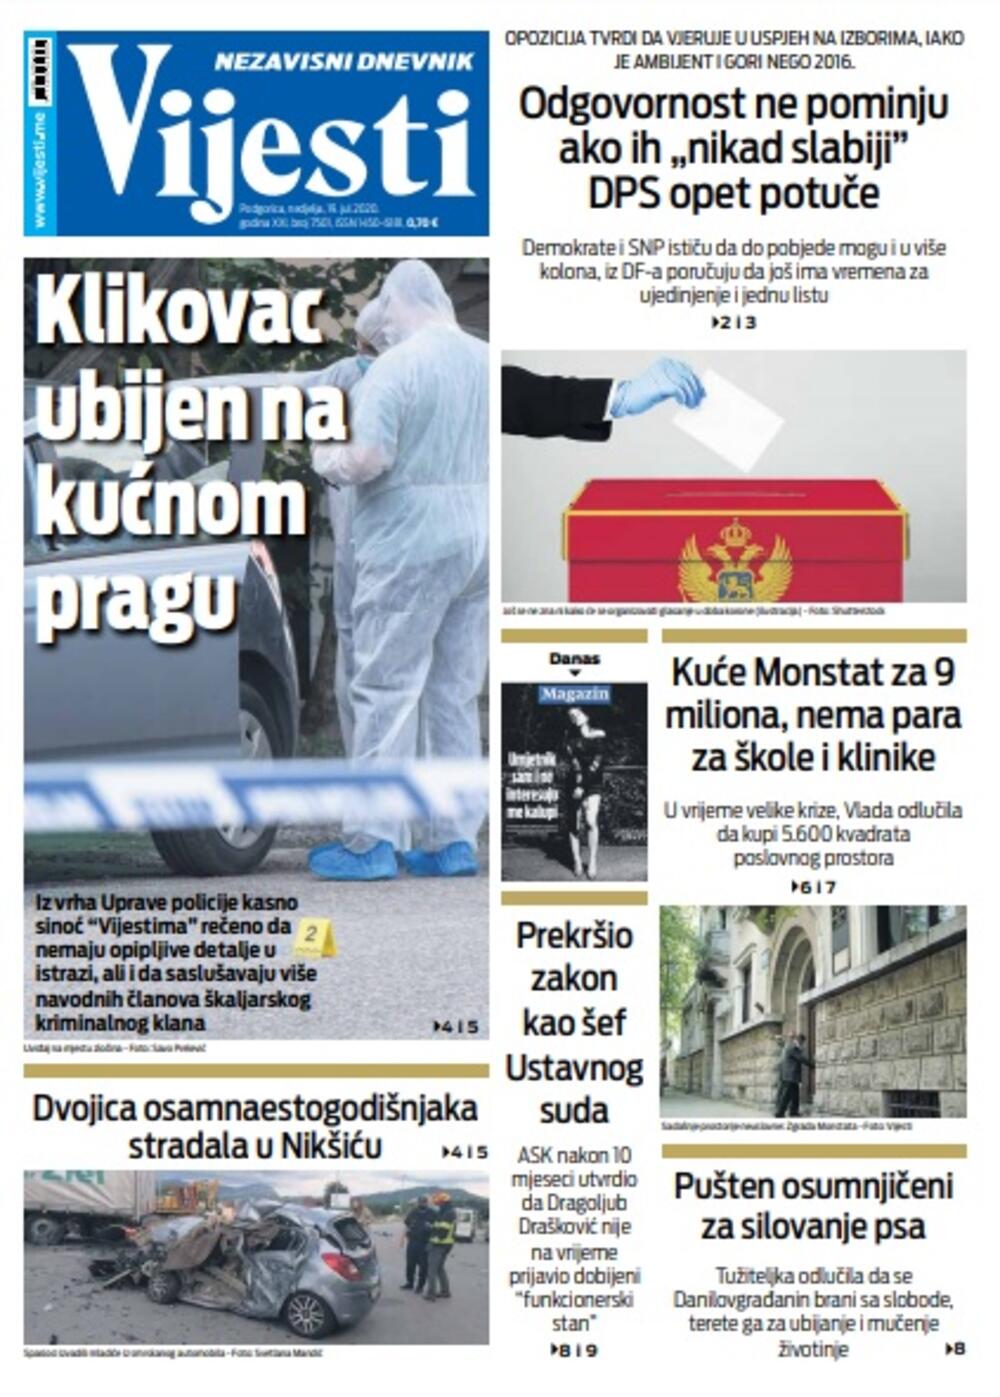 Naslovna strana "Vijesti" za 19. jul, Foto: Vijesti